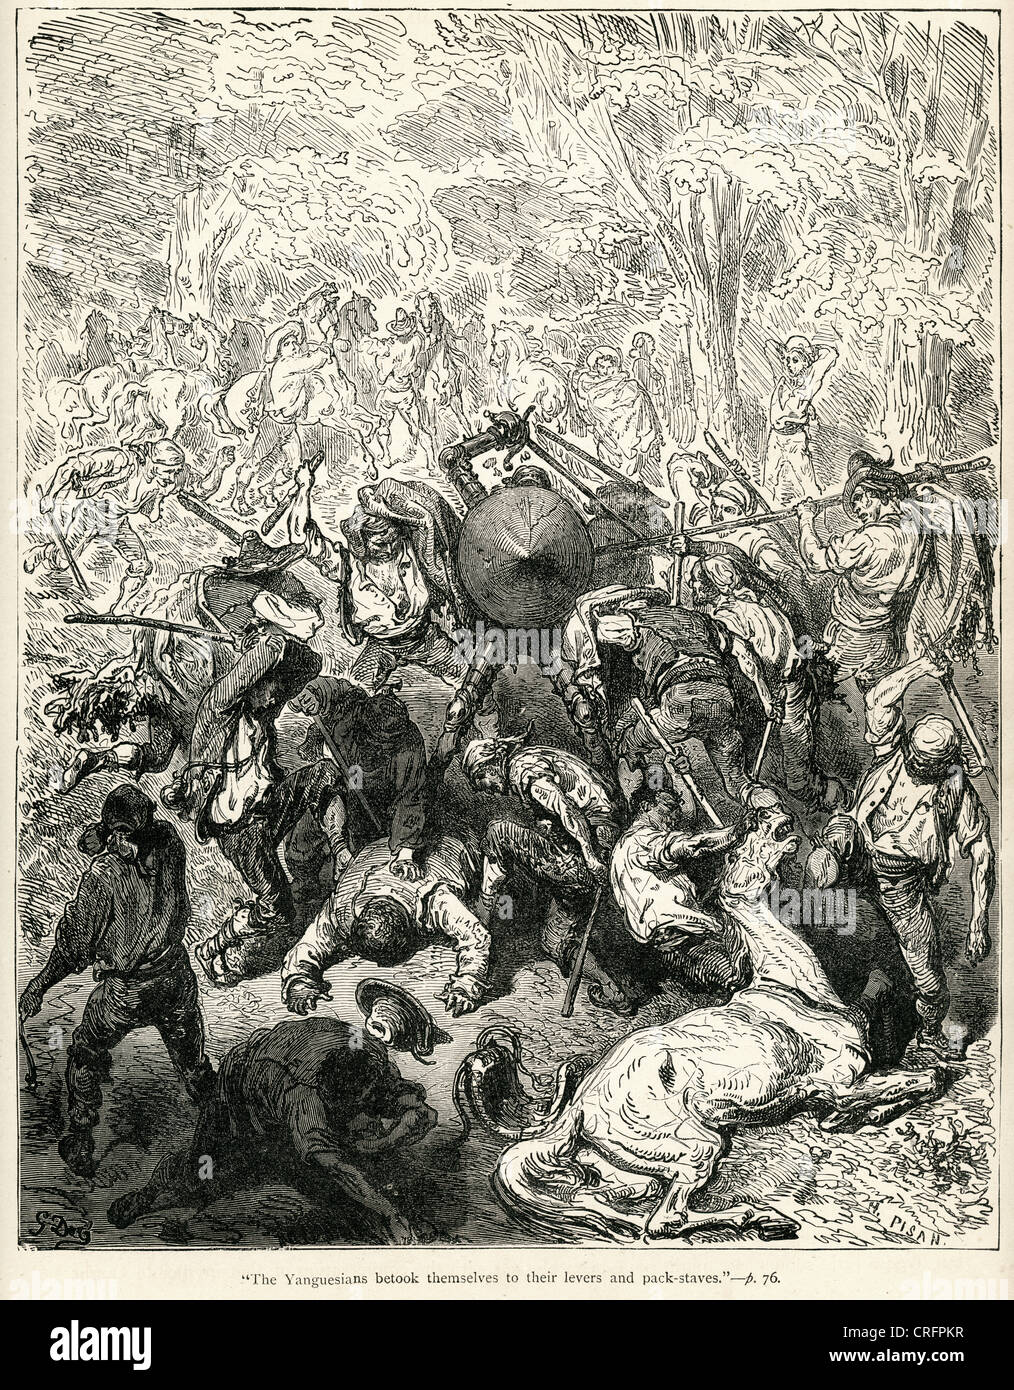 Don Quijote und die Yanguesians. Illustration von Gustave Dore von Don Quijote. Stockfoto